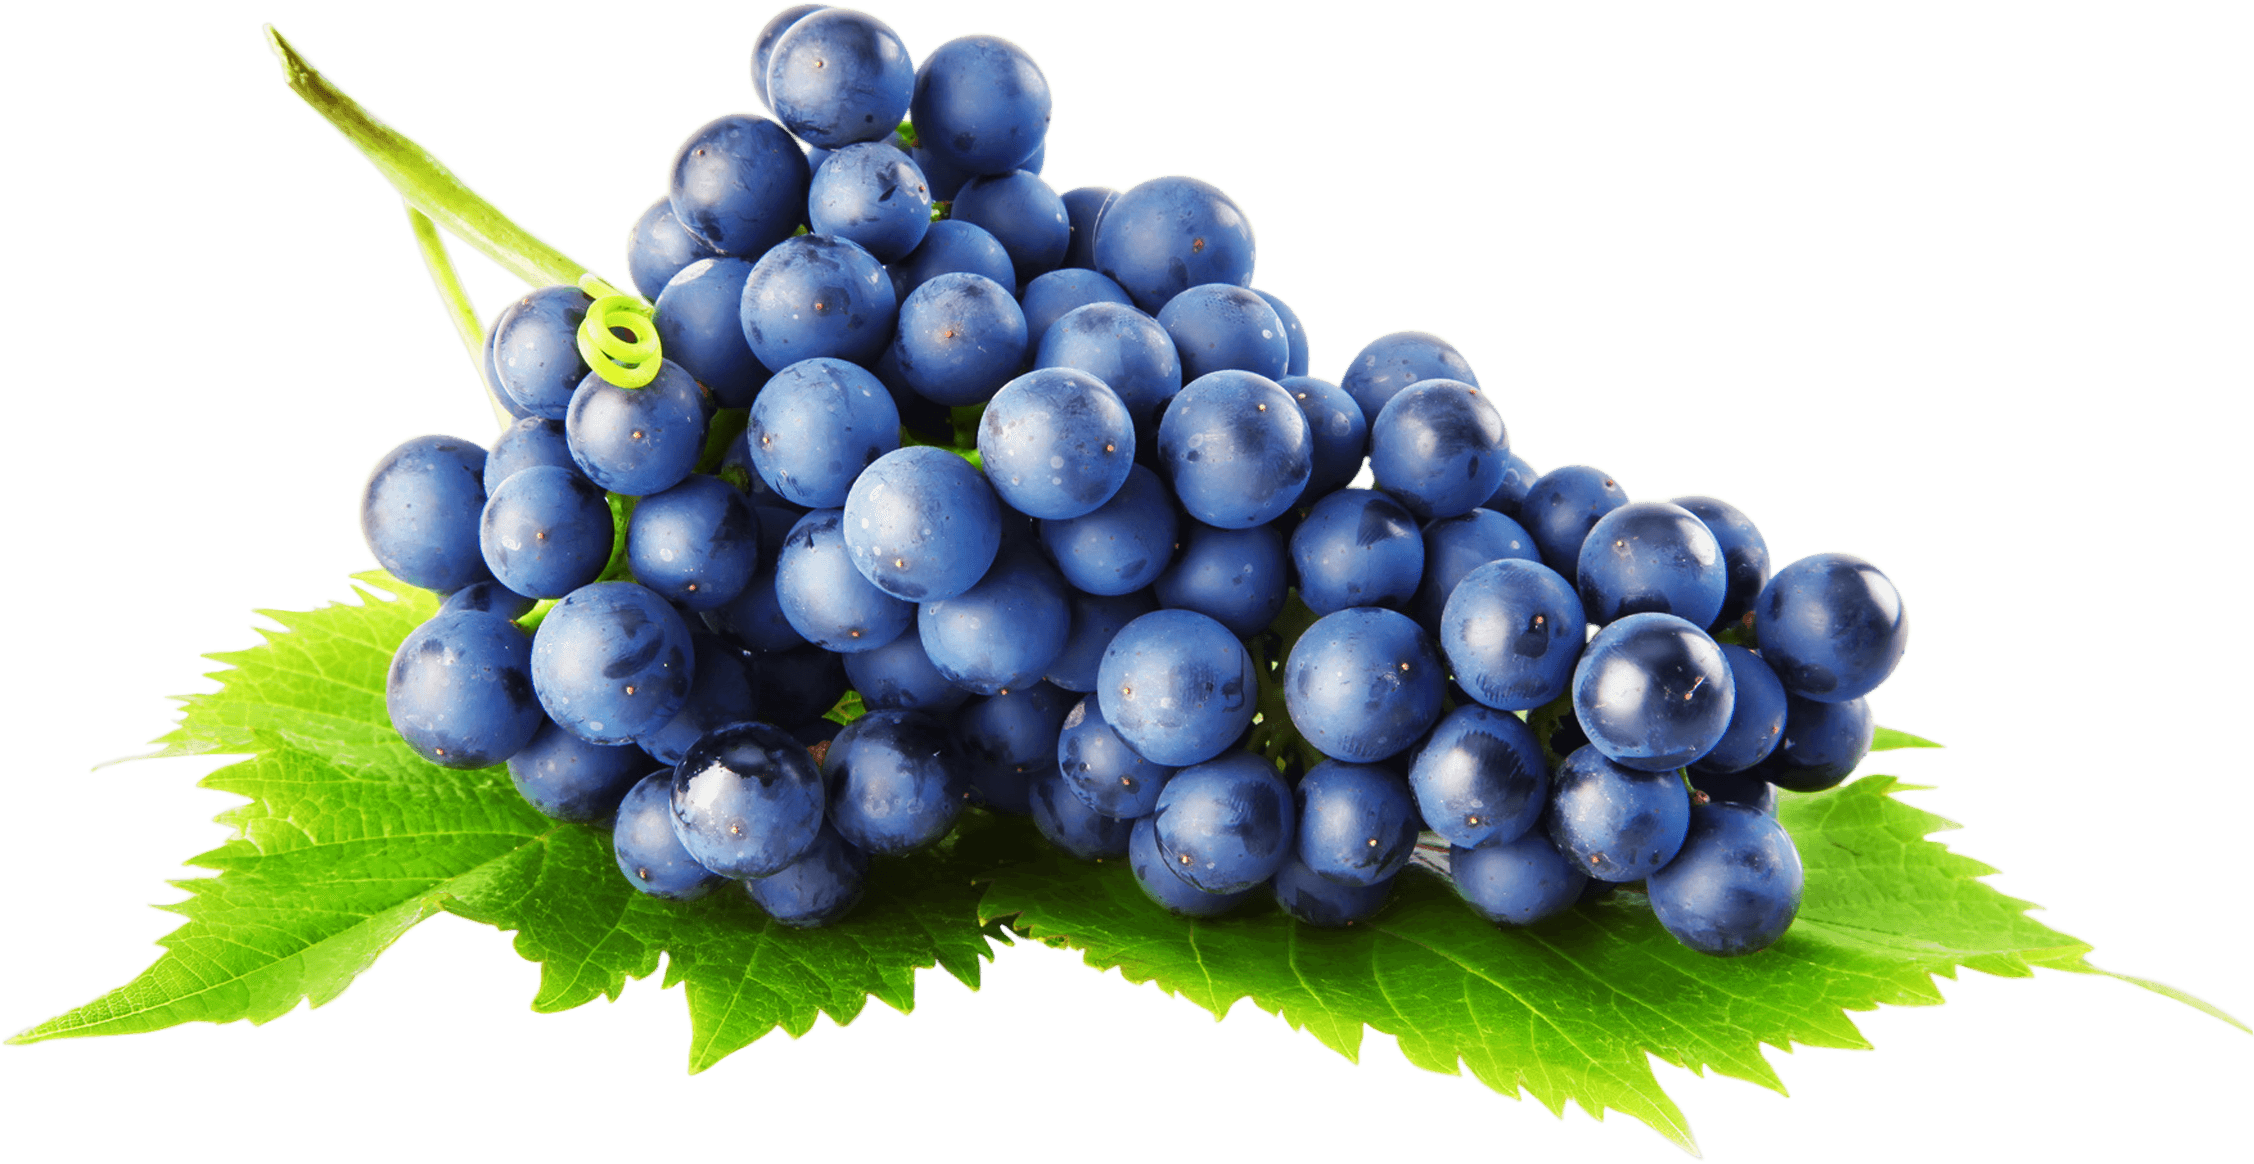 Fond de limage PNG de raisins noirs